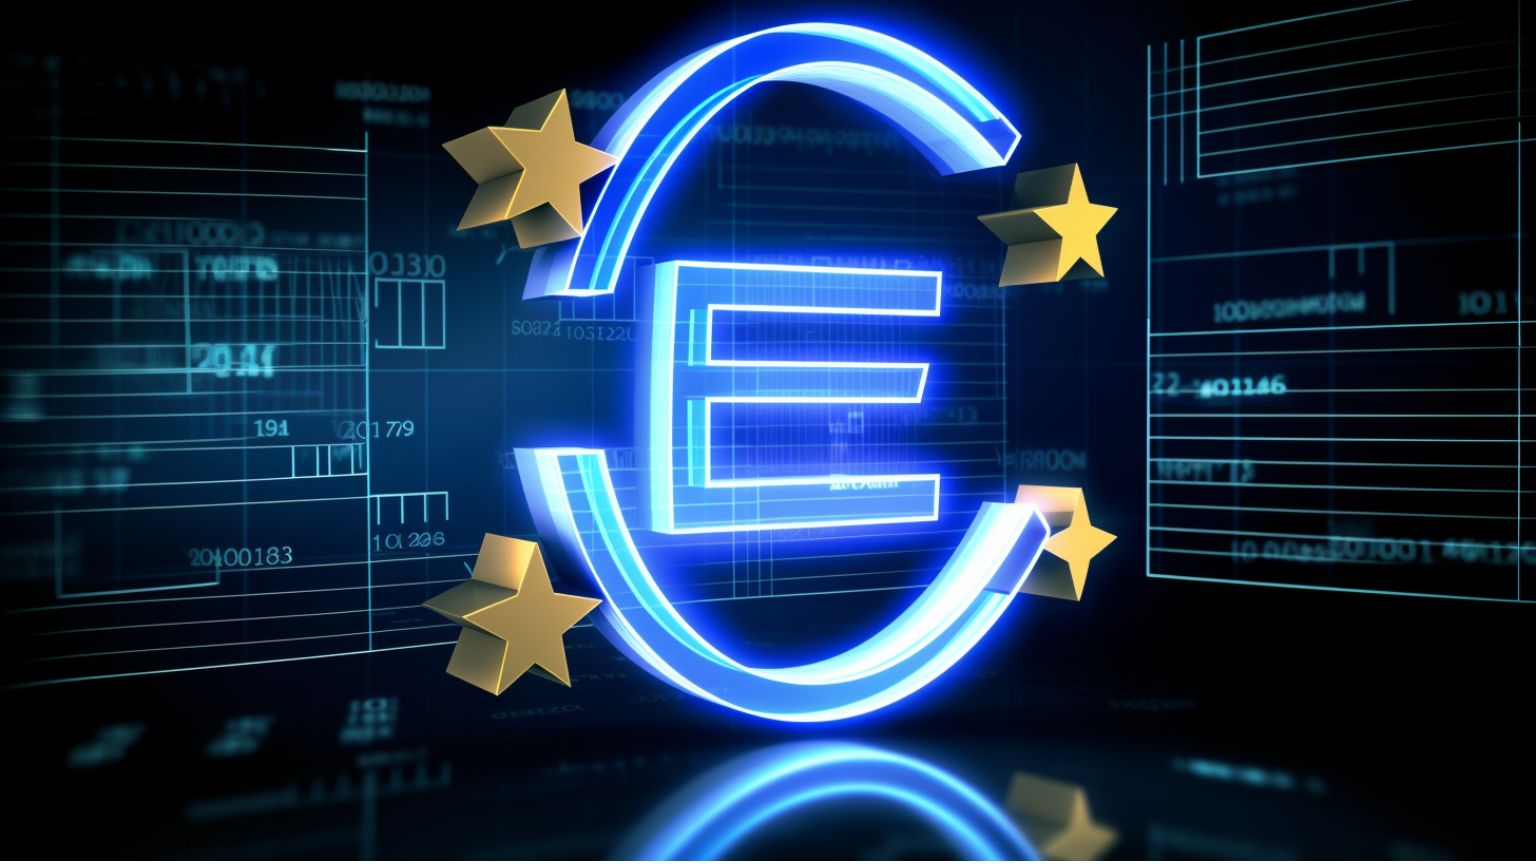 Sind die Händler in der EU bereit für eine bargeldlose Zukunft? Drohende Vorschriften könnten die Akzeptanz des digitalen Euro erzwingen!